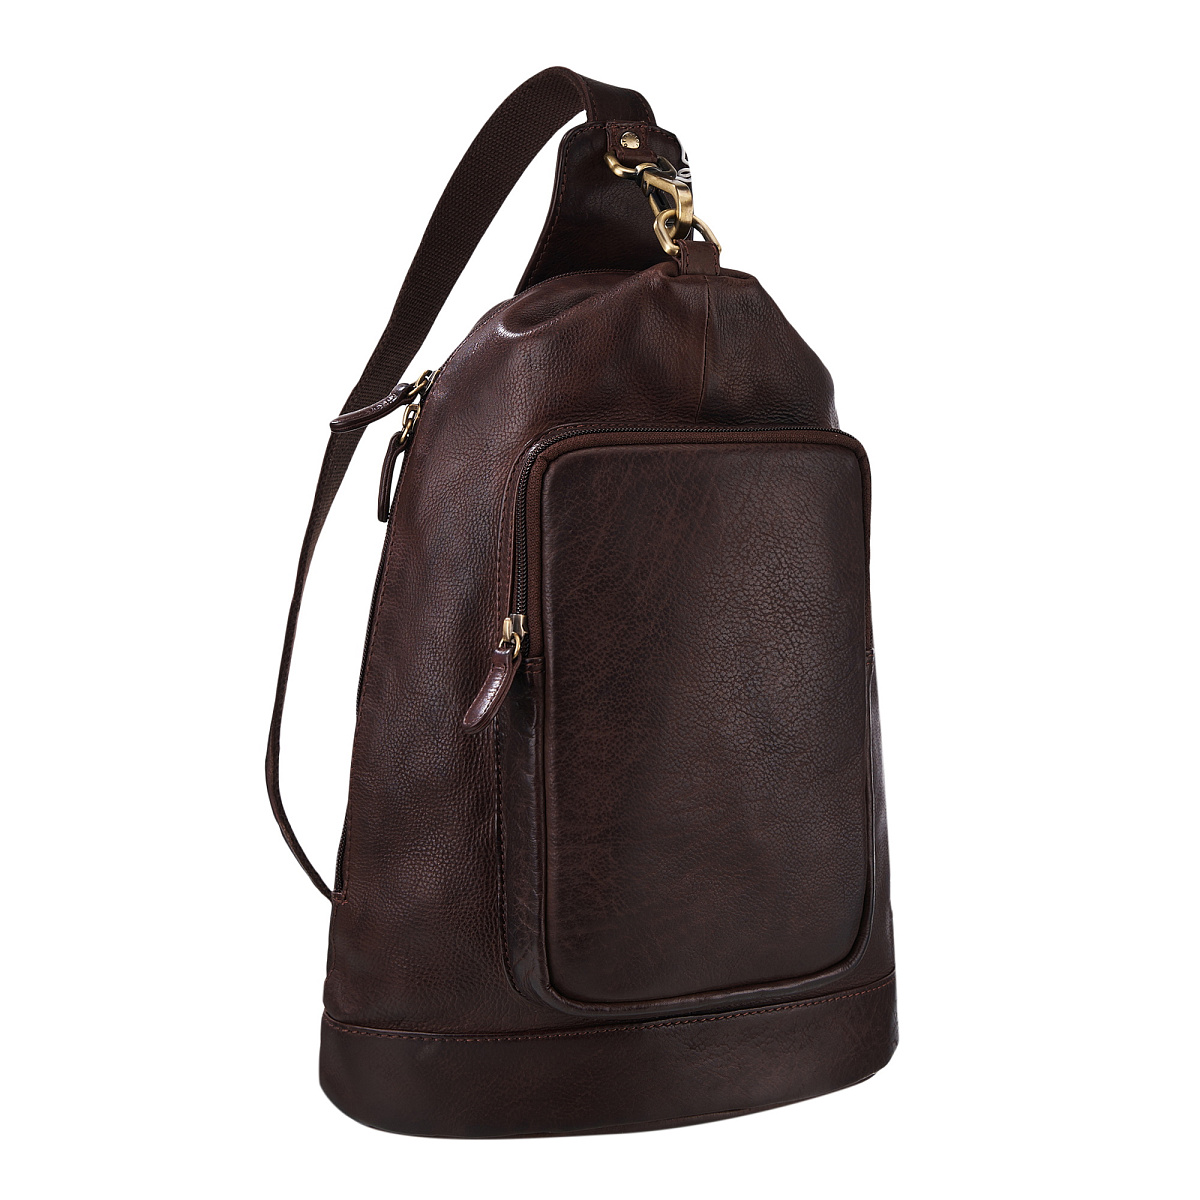 Вермонт рюкзак коричневый B402778-248-09